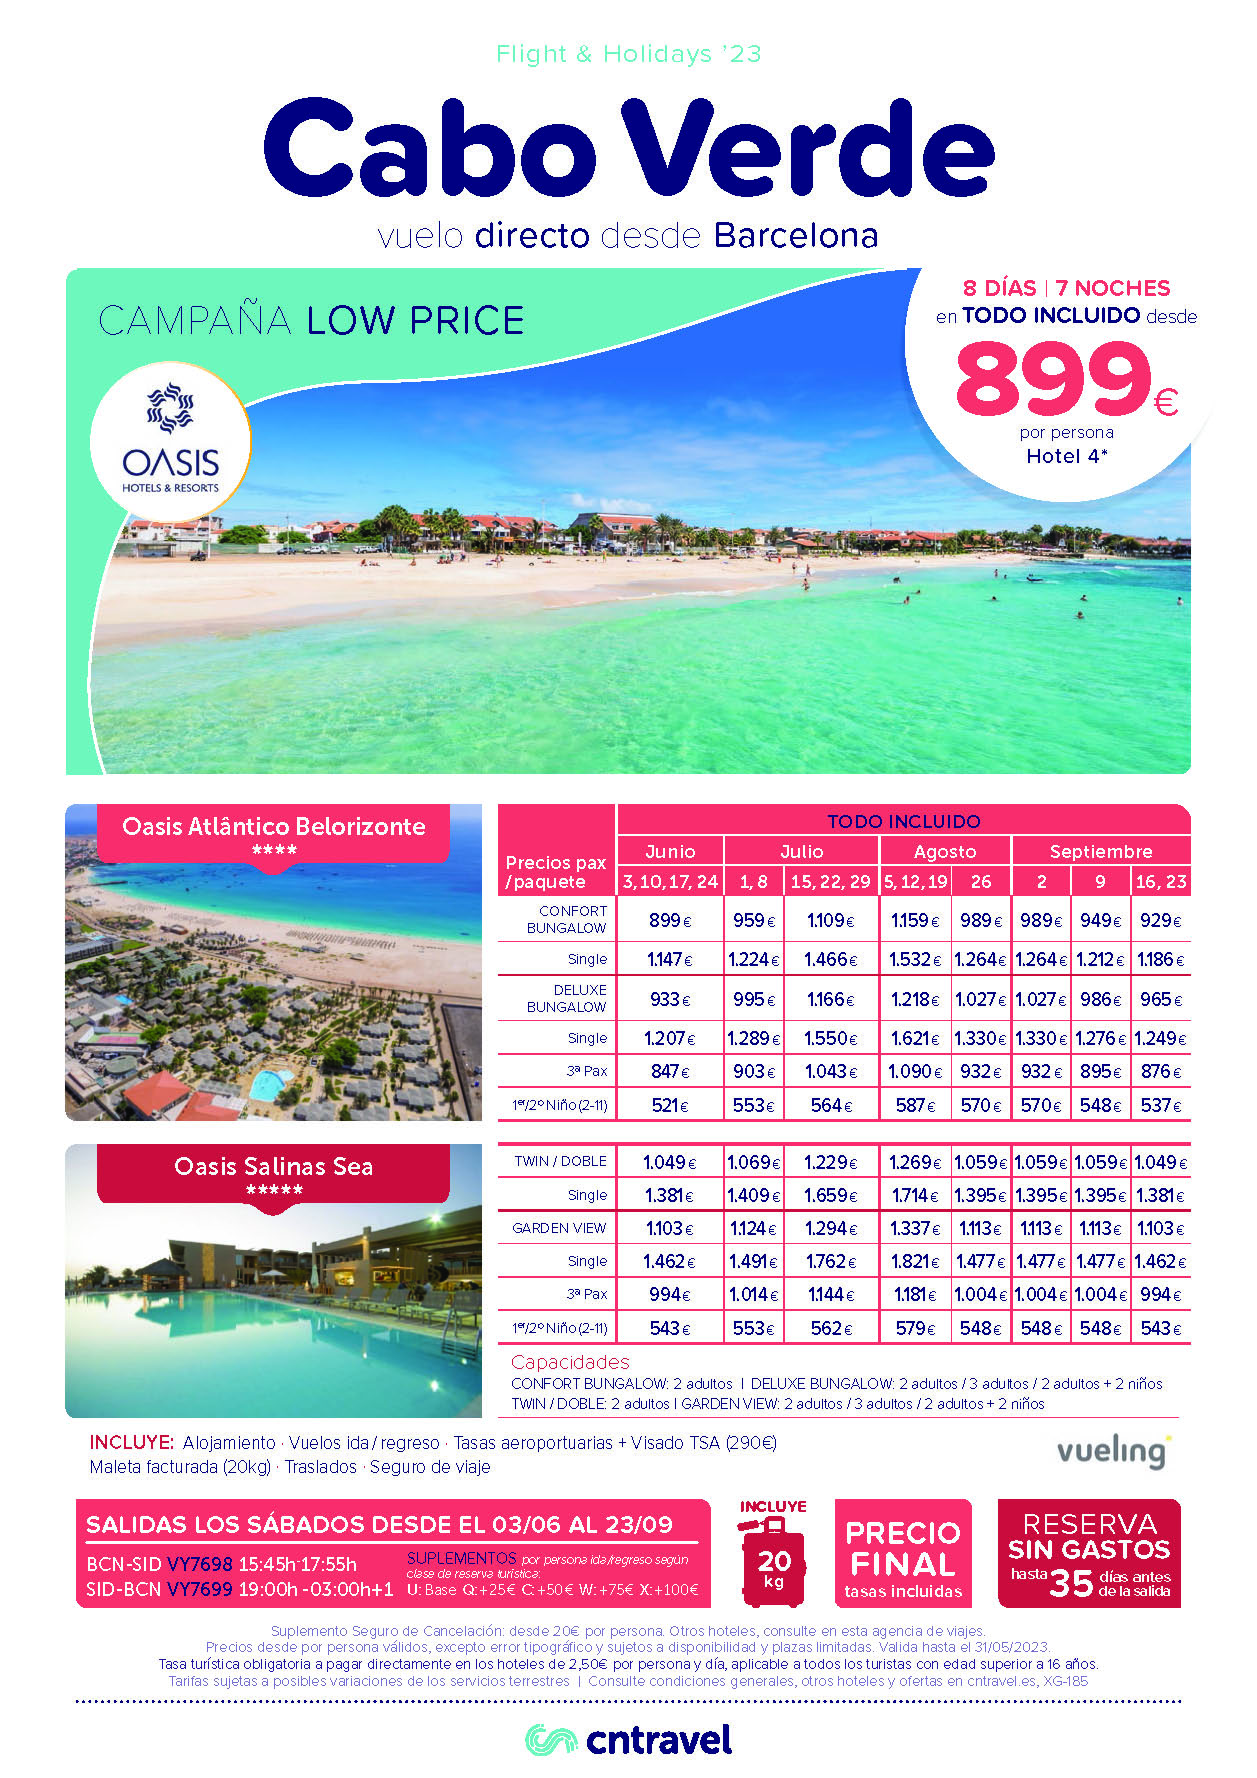 Ofertas CN Travel Vacaciones en Cabo Verde Junio a Septiembre 2023 8 dias Hotel 4 estrellas Todo Incluido vuelos directos Vueling desde Barcelona